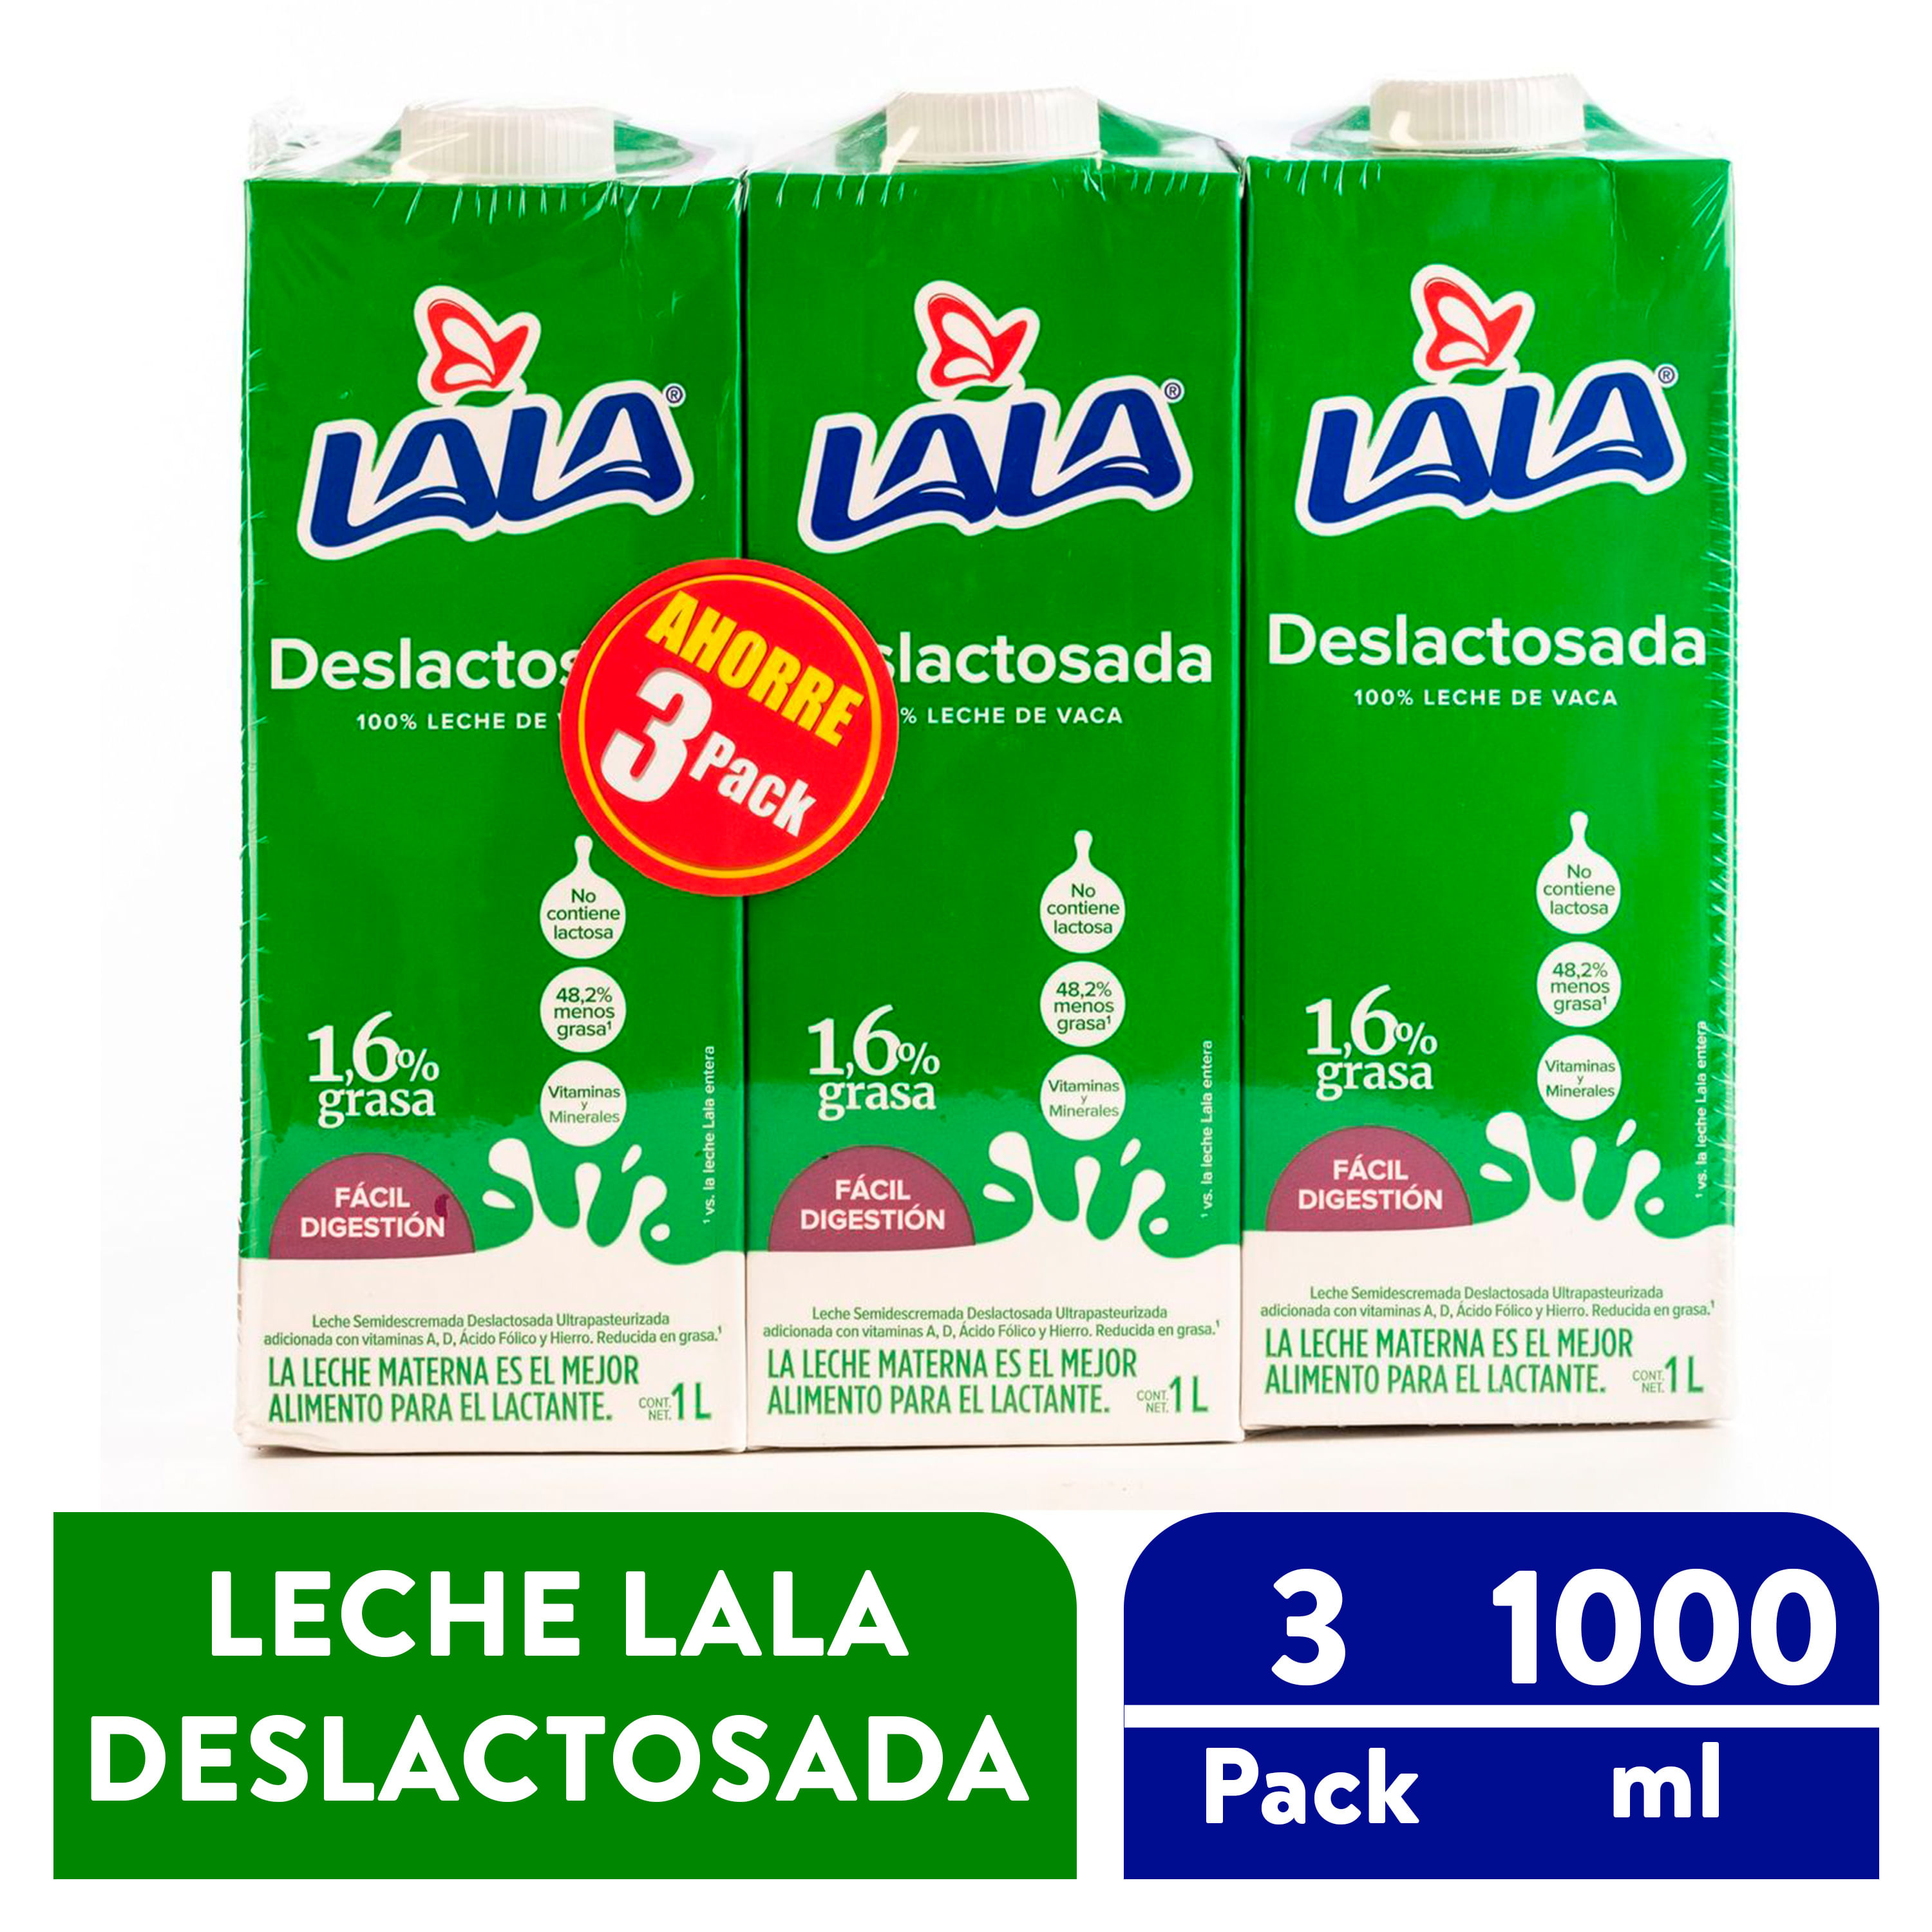 3-Pack-Leche-Lala-Uht-Deslactosada-1000ml-1-25839